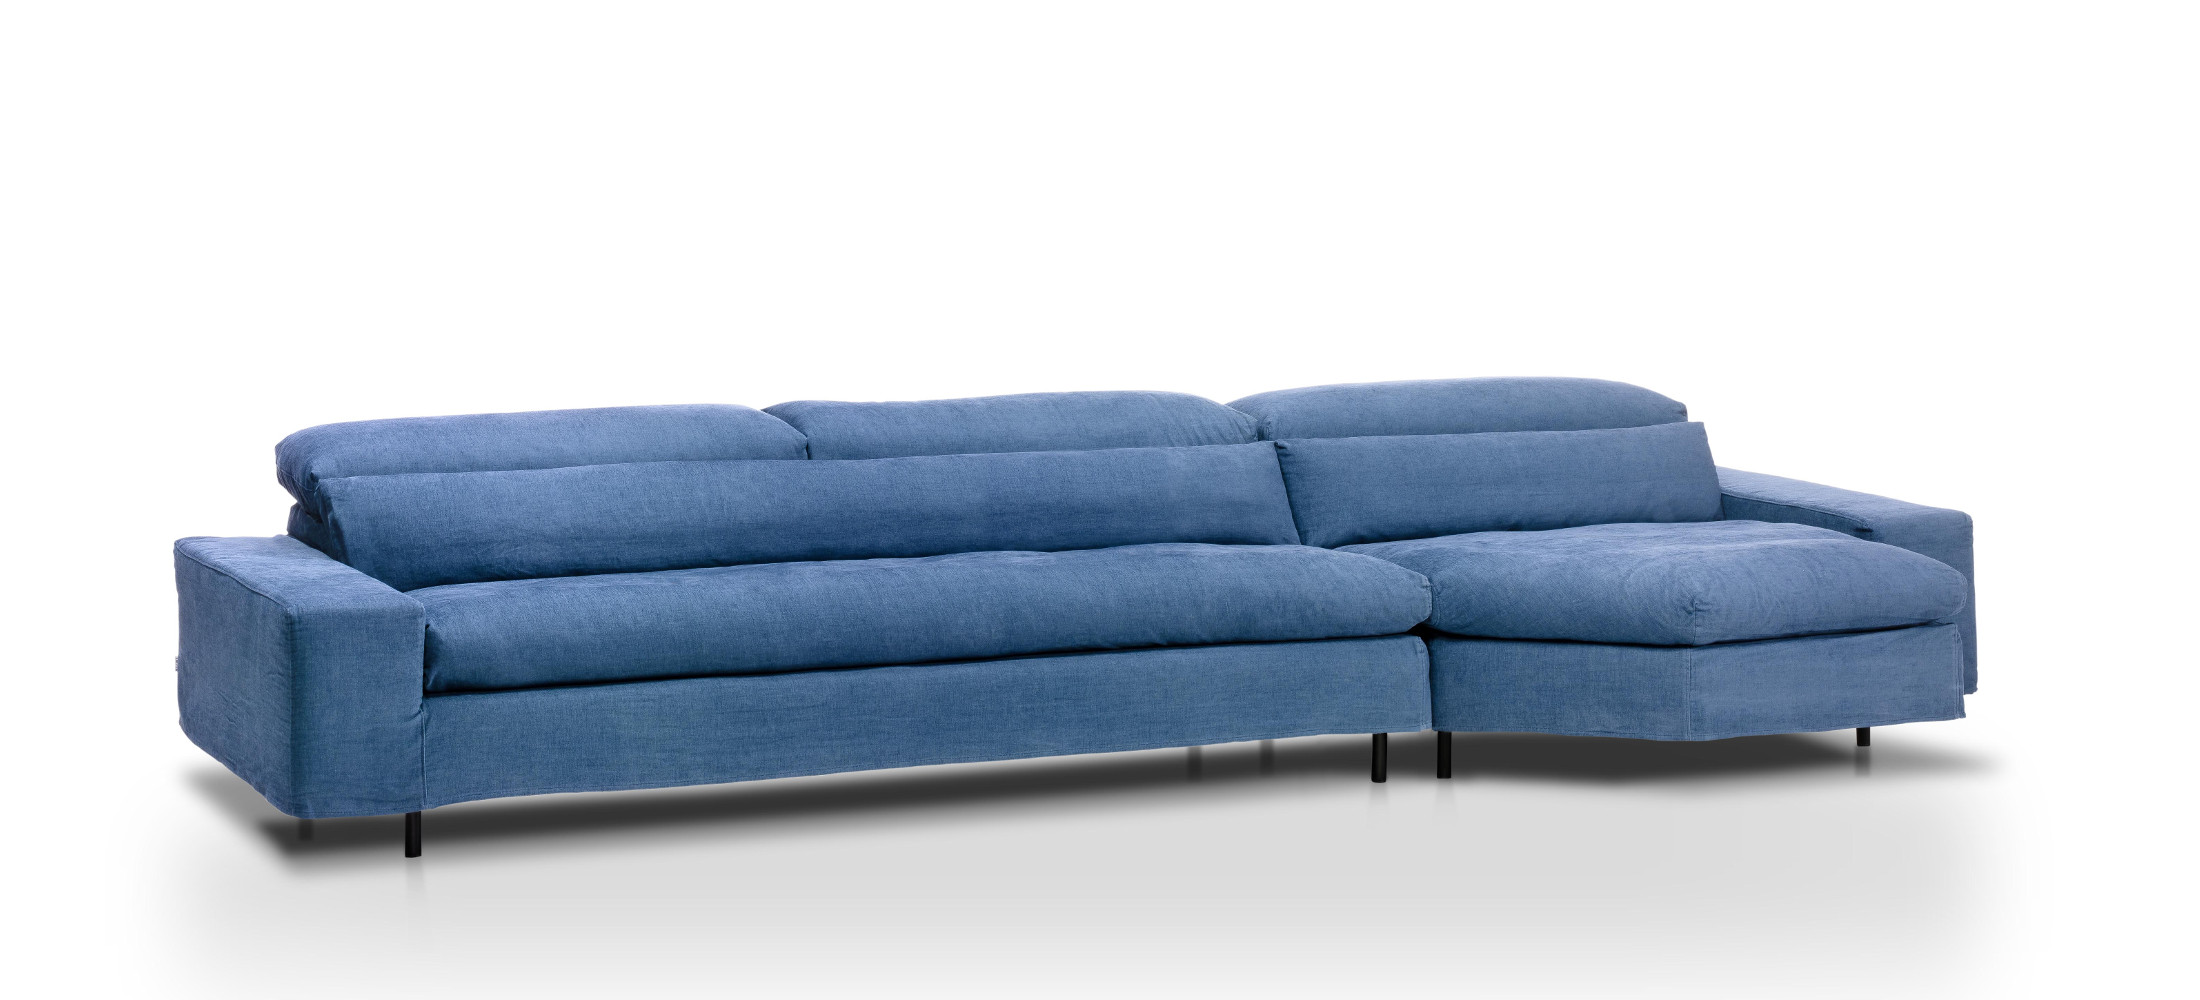 sofa de calidad